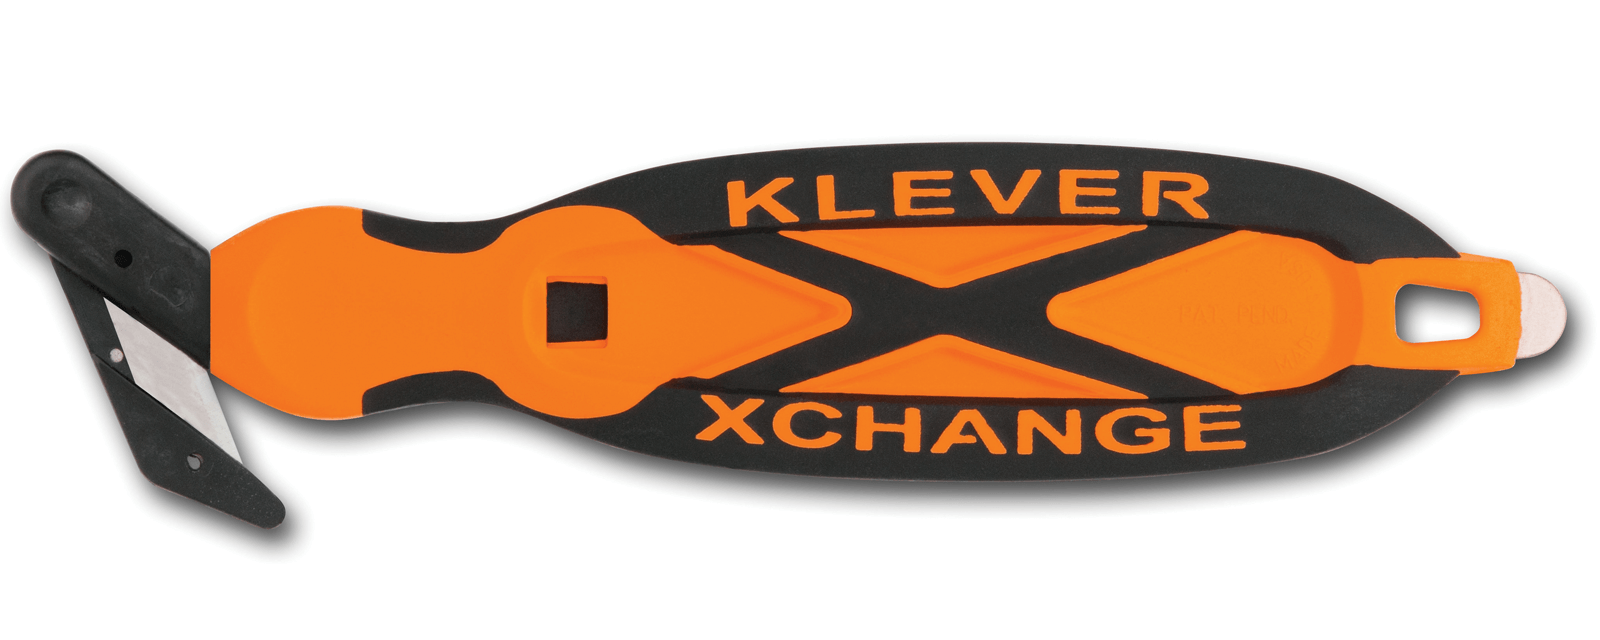 H032O-Sicherheitsmesser-Klever-Xchange-Orange-Breitkopf-CURT-tools_1600